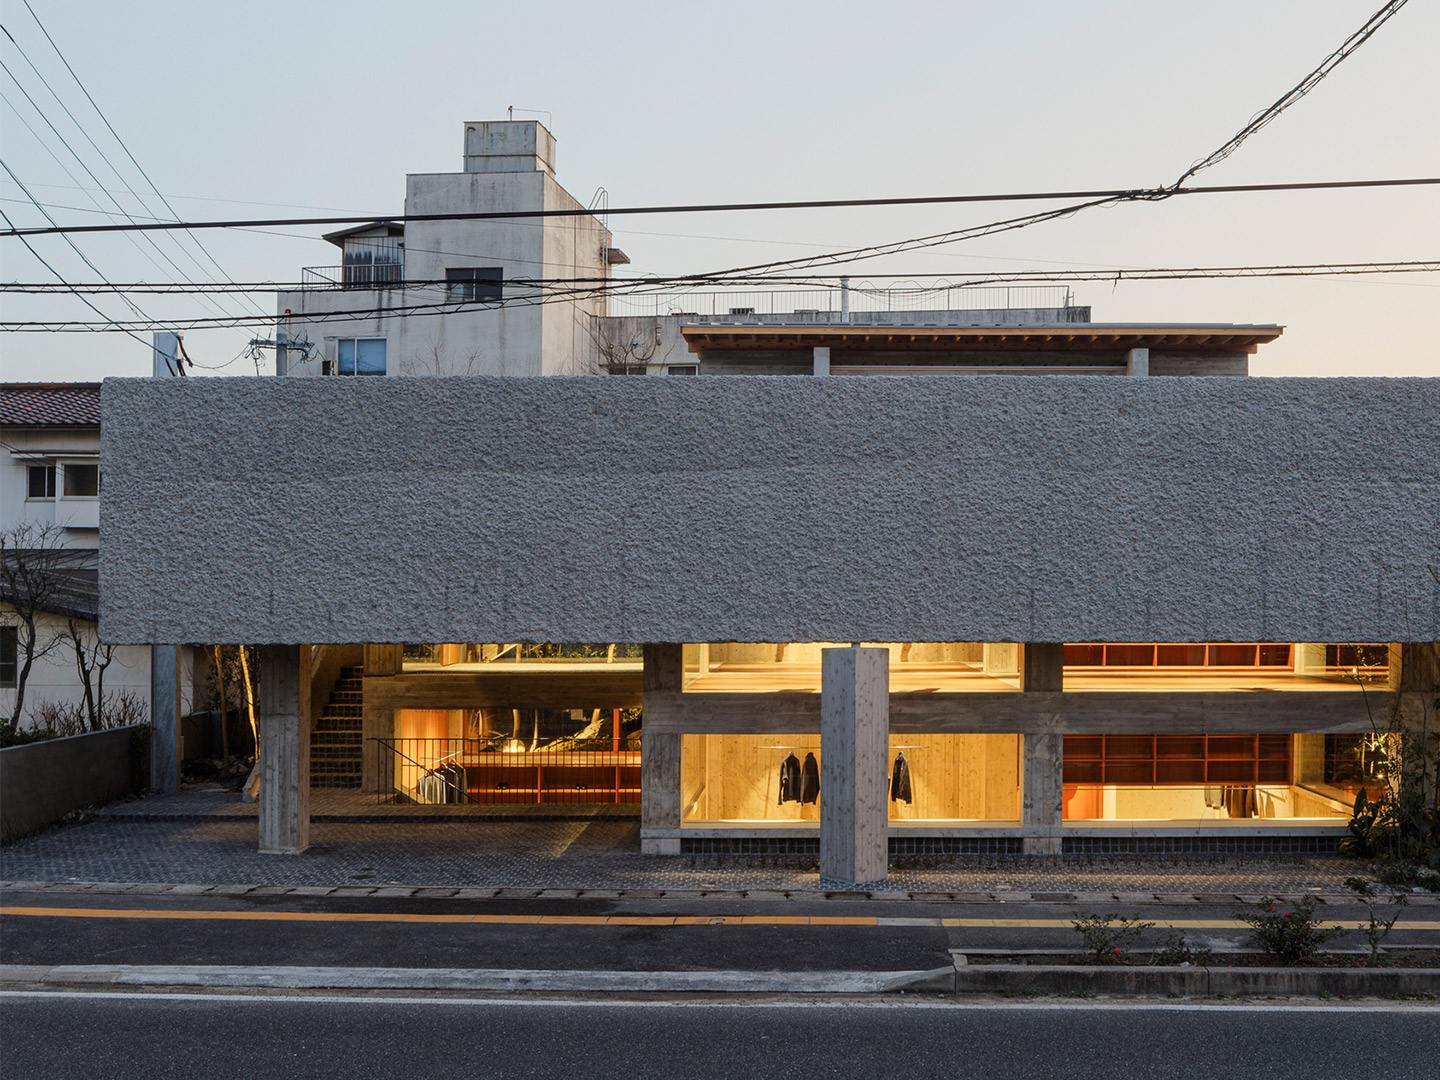 Oharasando Building in Hita City, Japan by Toru Shimokawa